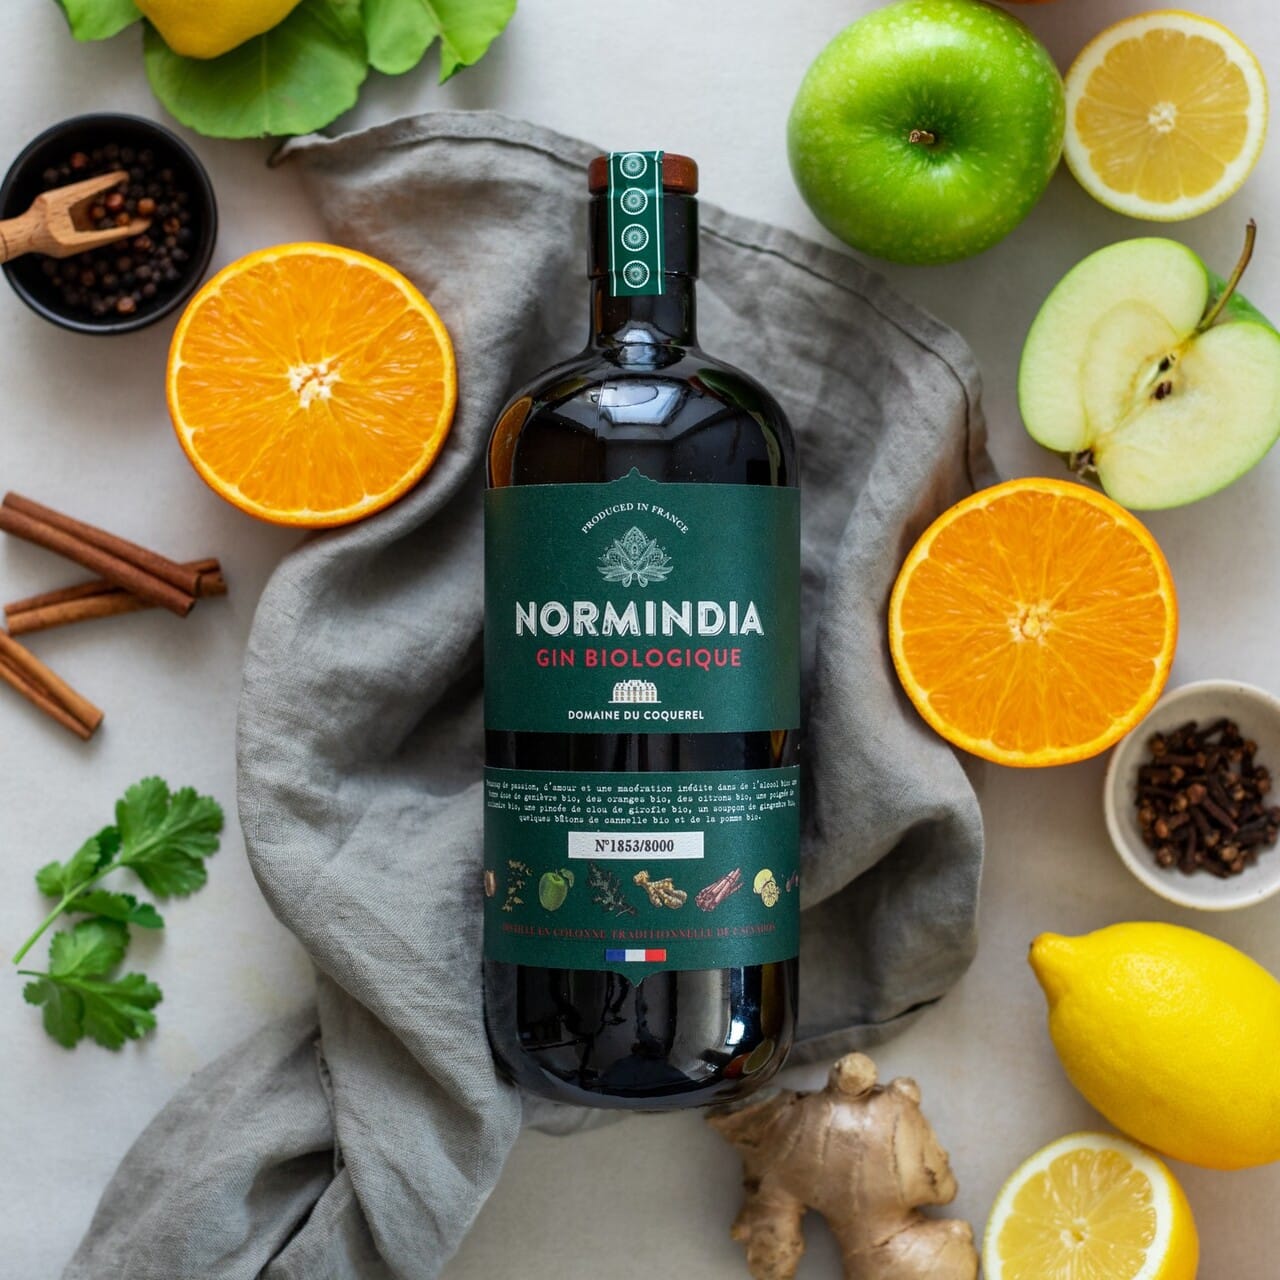 Normindia Bio : La déclinaison écoresponsable du gin phare du Domaine du Coquerel